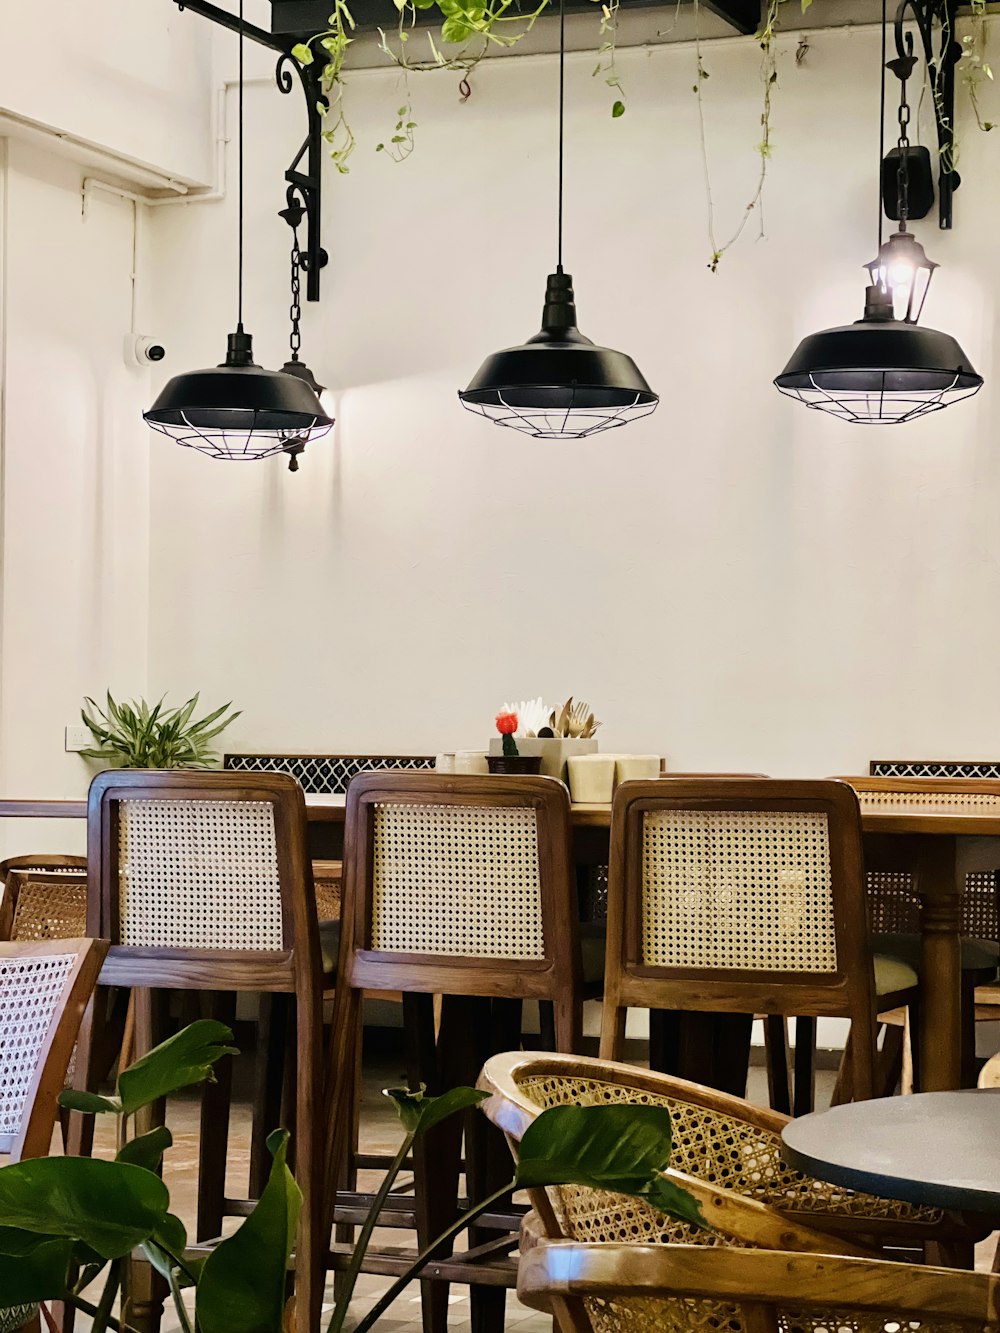 천장에 매달려있는 식물이있는 테이블과 의자가있는 레스토랑